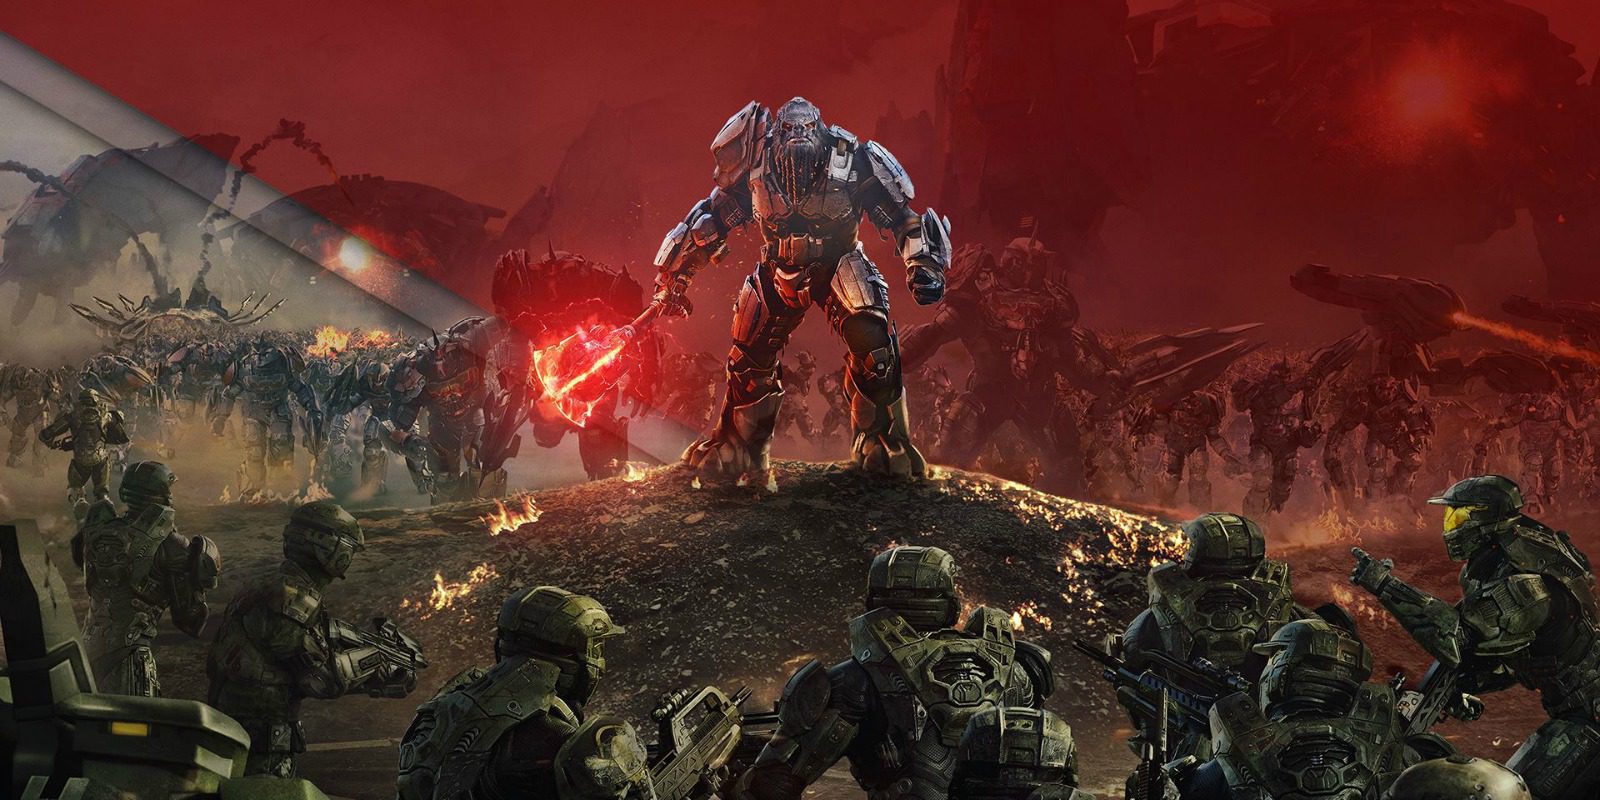 Prueba 'Halo Wars 2' en PC gracias a su demo